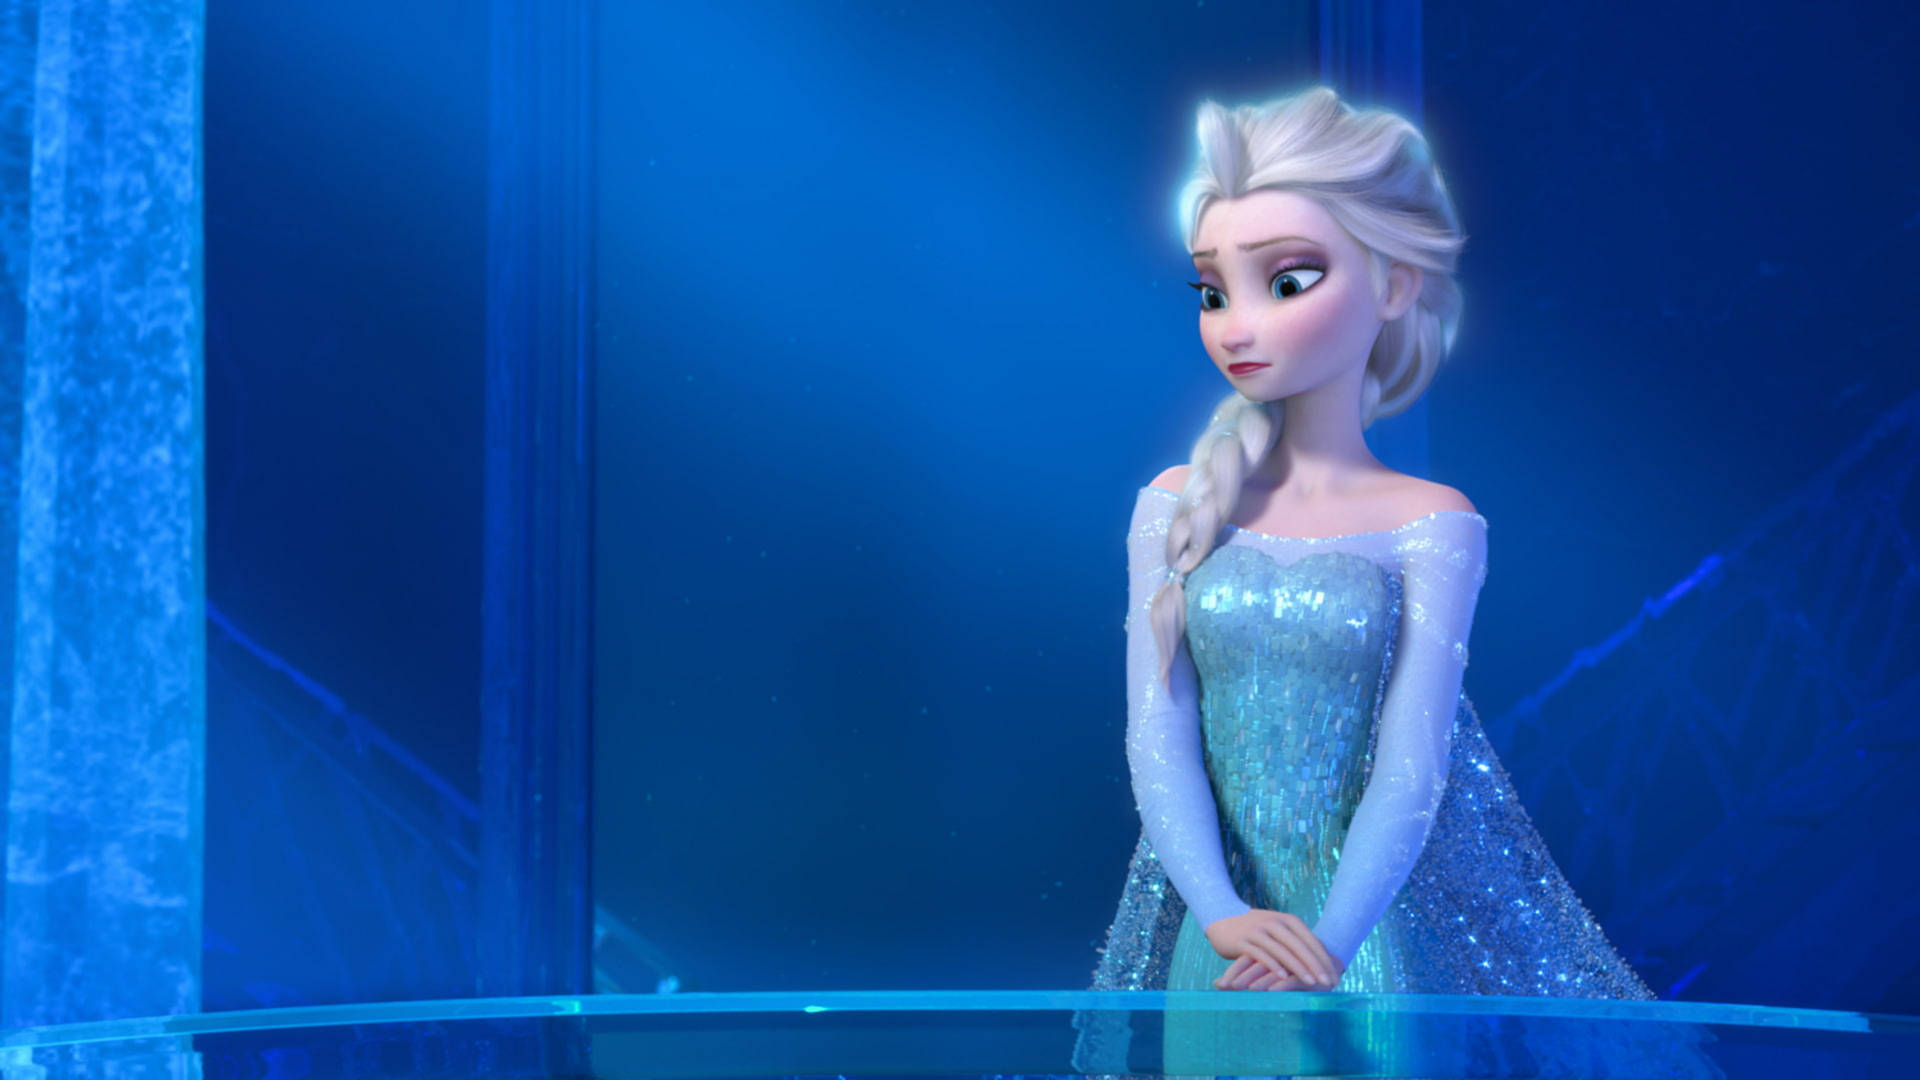 Disney Frozen Elsa art #Disney #Frozen #Elsa #cosplayclass::…Click here to  download elsa wallpaper